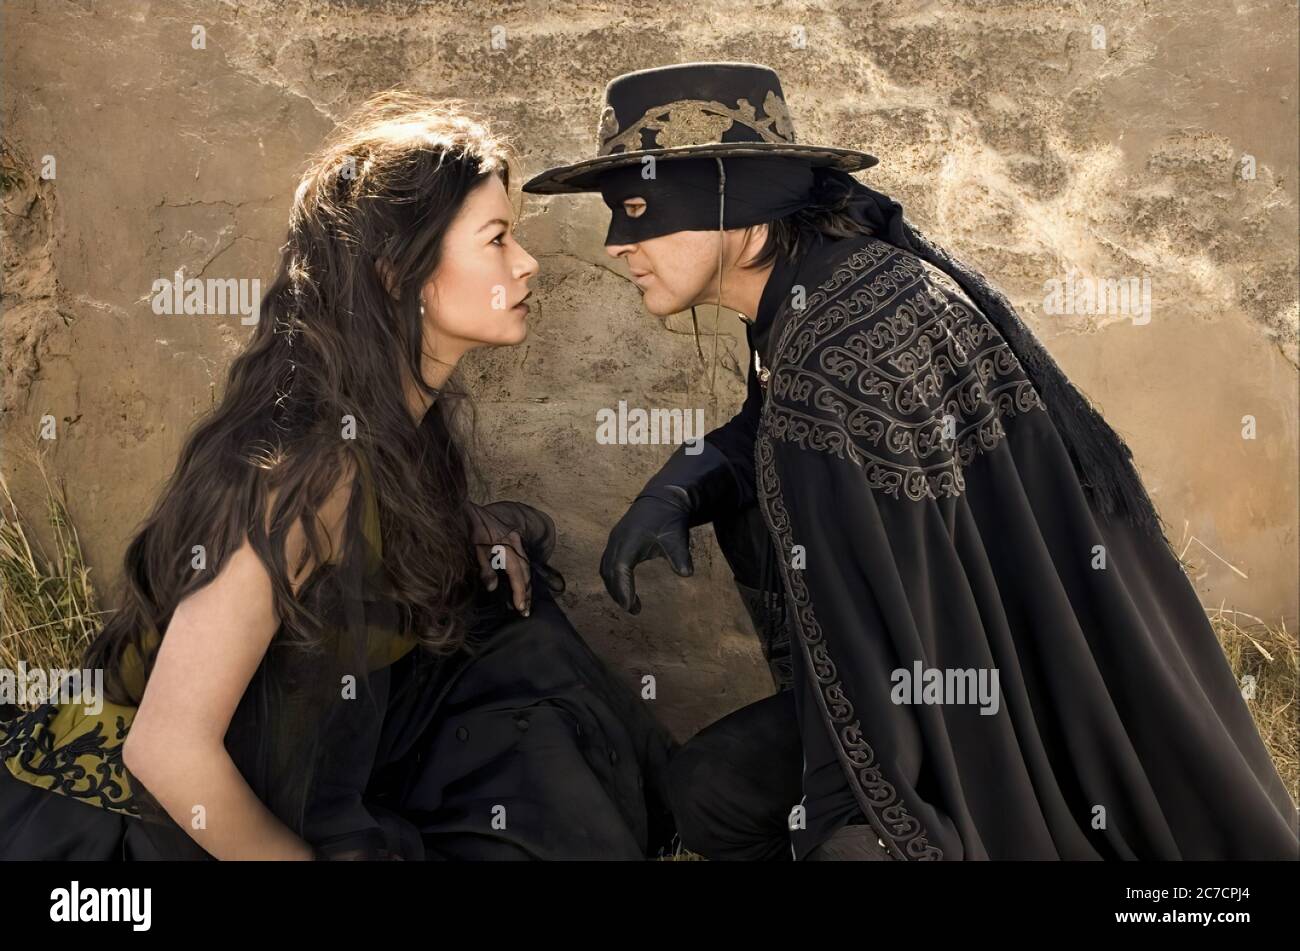 Catherine Zeta Jones und Antonio Banderas in der Legende des Zorro - Werbefilm Bild 02 Stockfoto